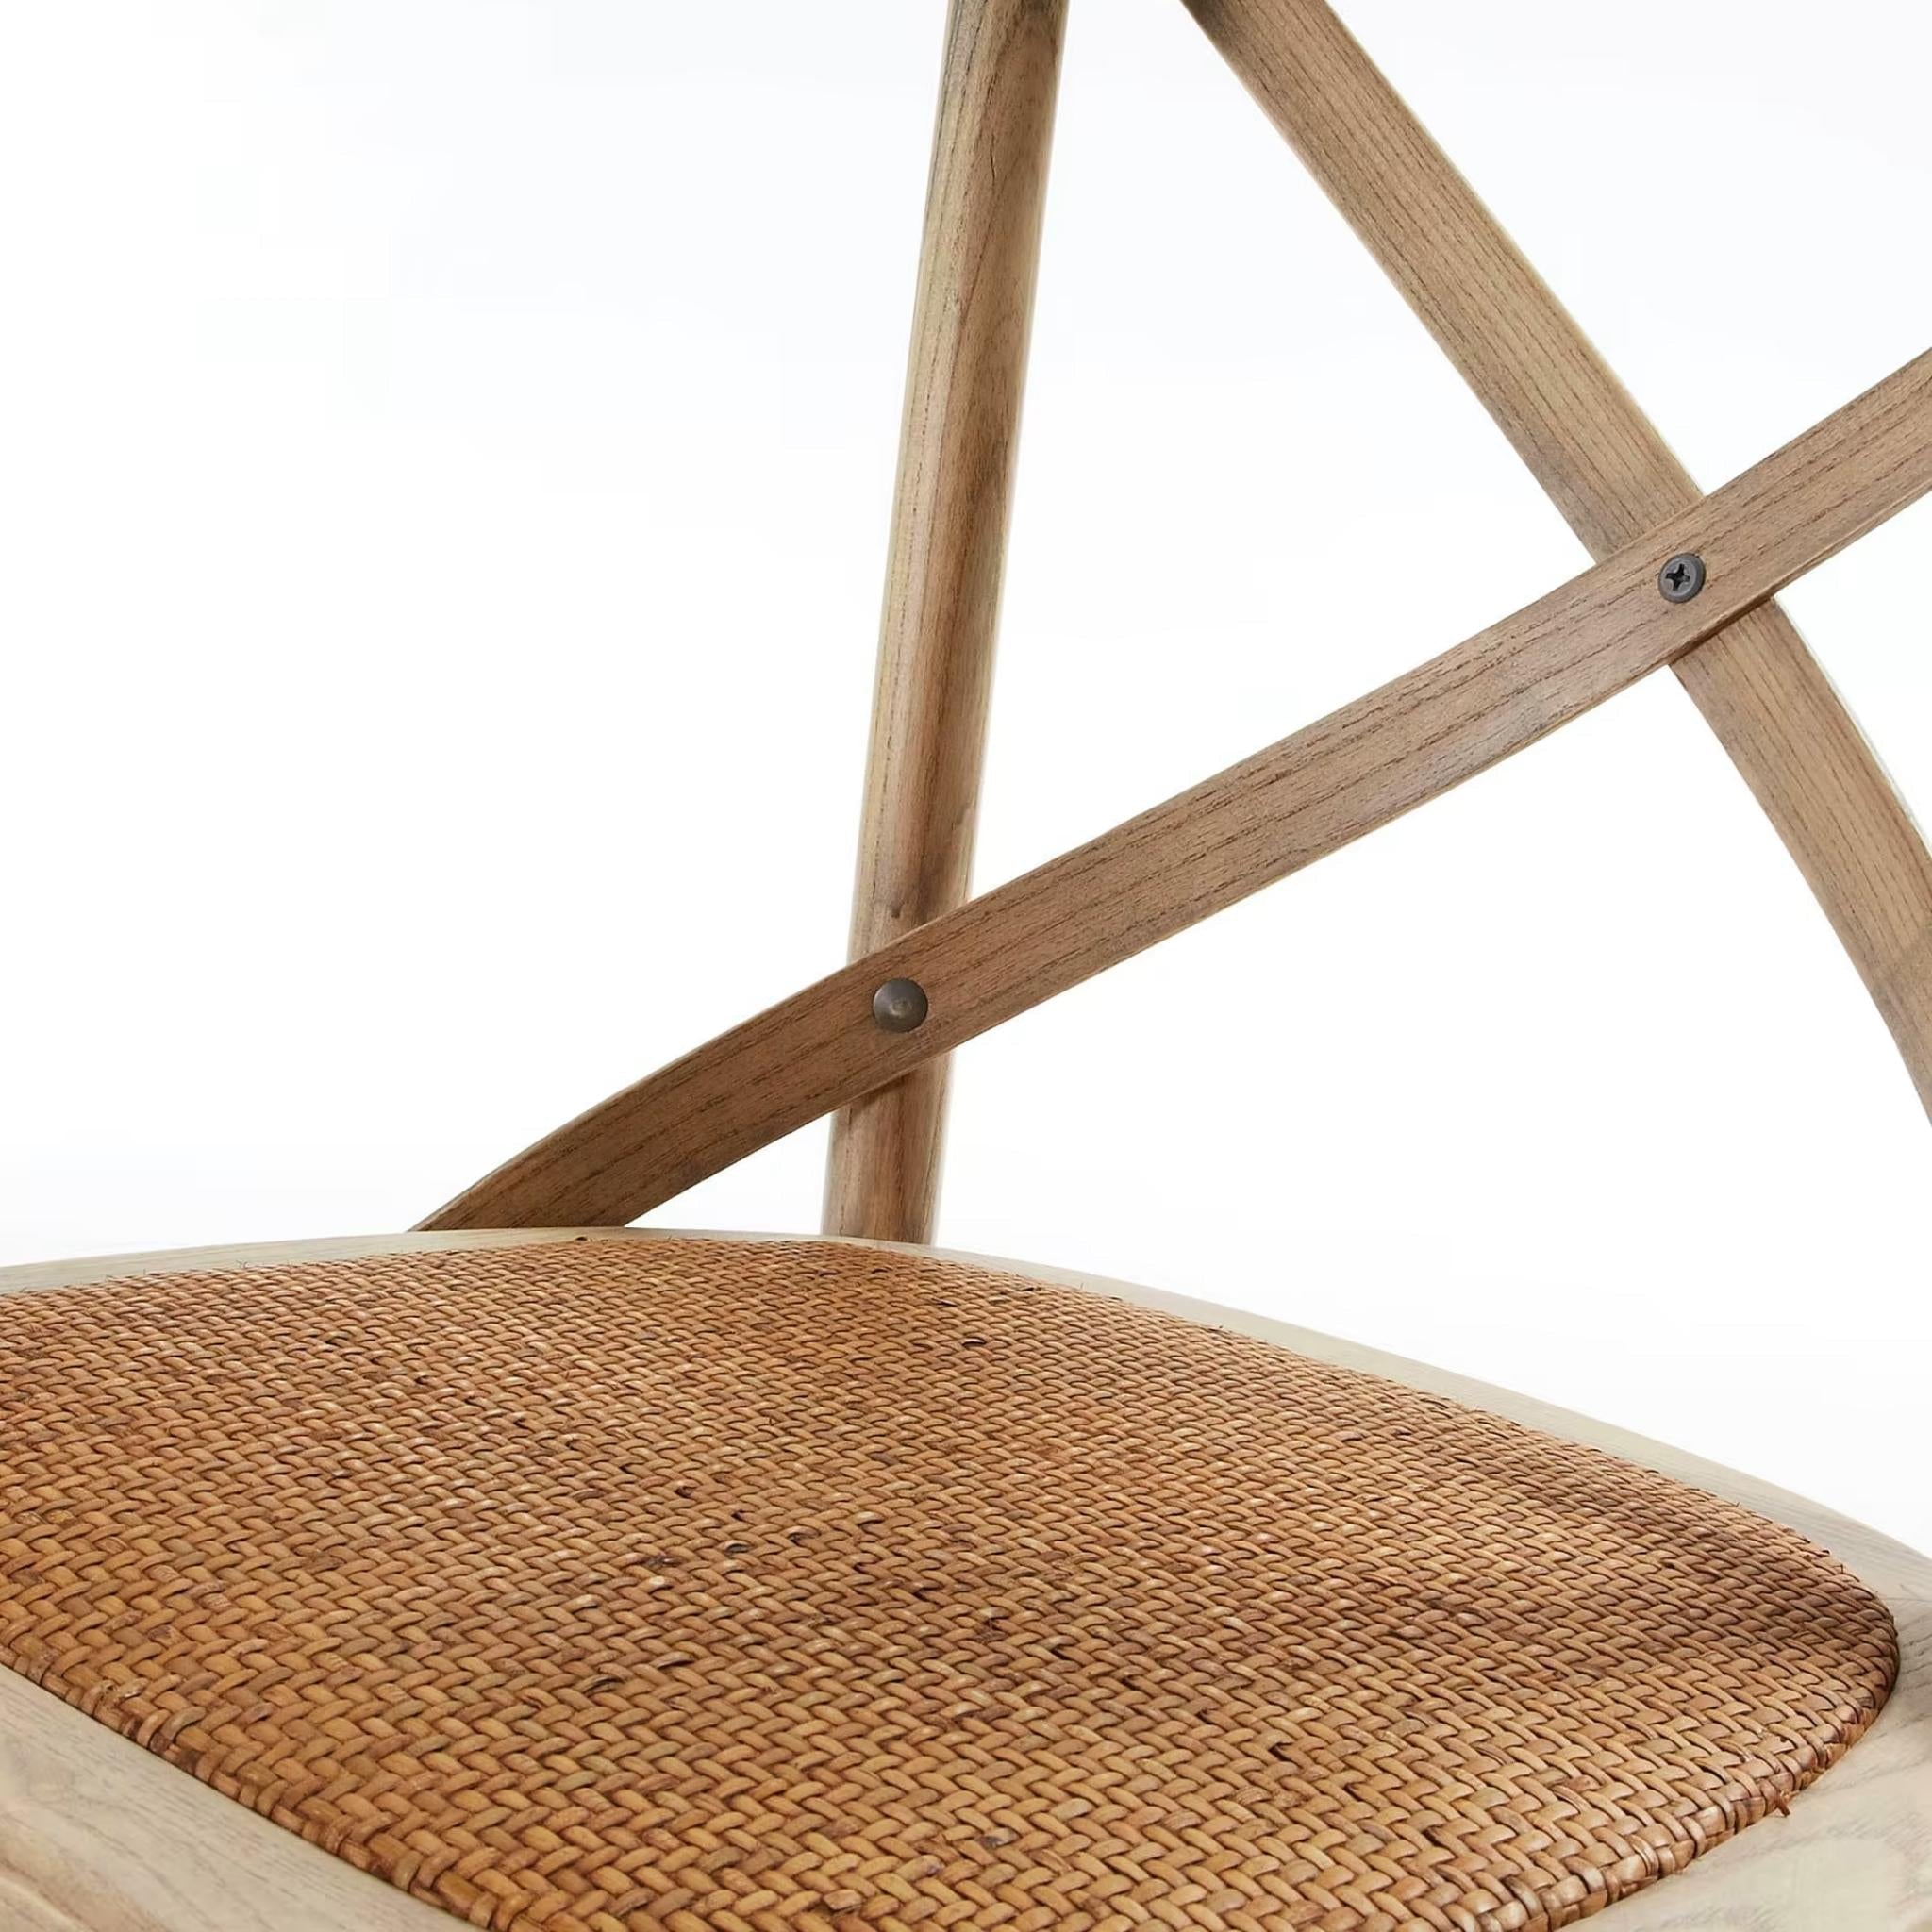 Kave Home - Alsie Stuhl  aus massivem Ulmenholz mit natürlichem Finish - SKU #C416M46 - Sitzfläche aus Rattan